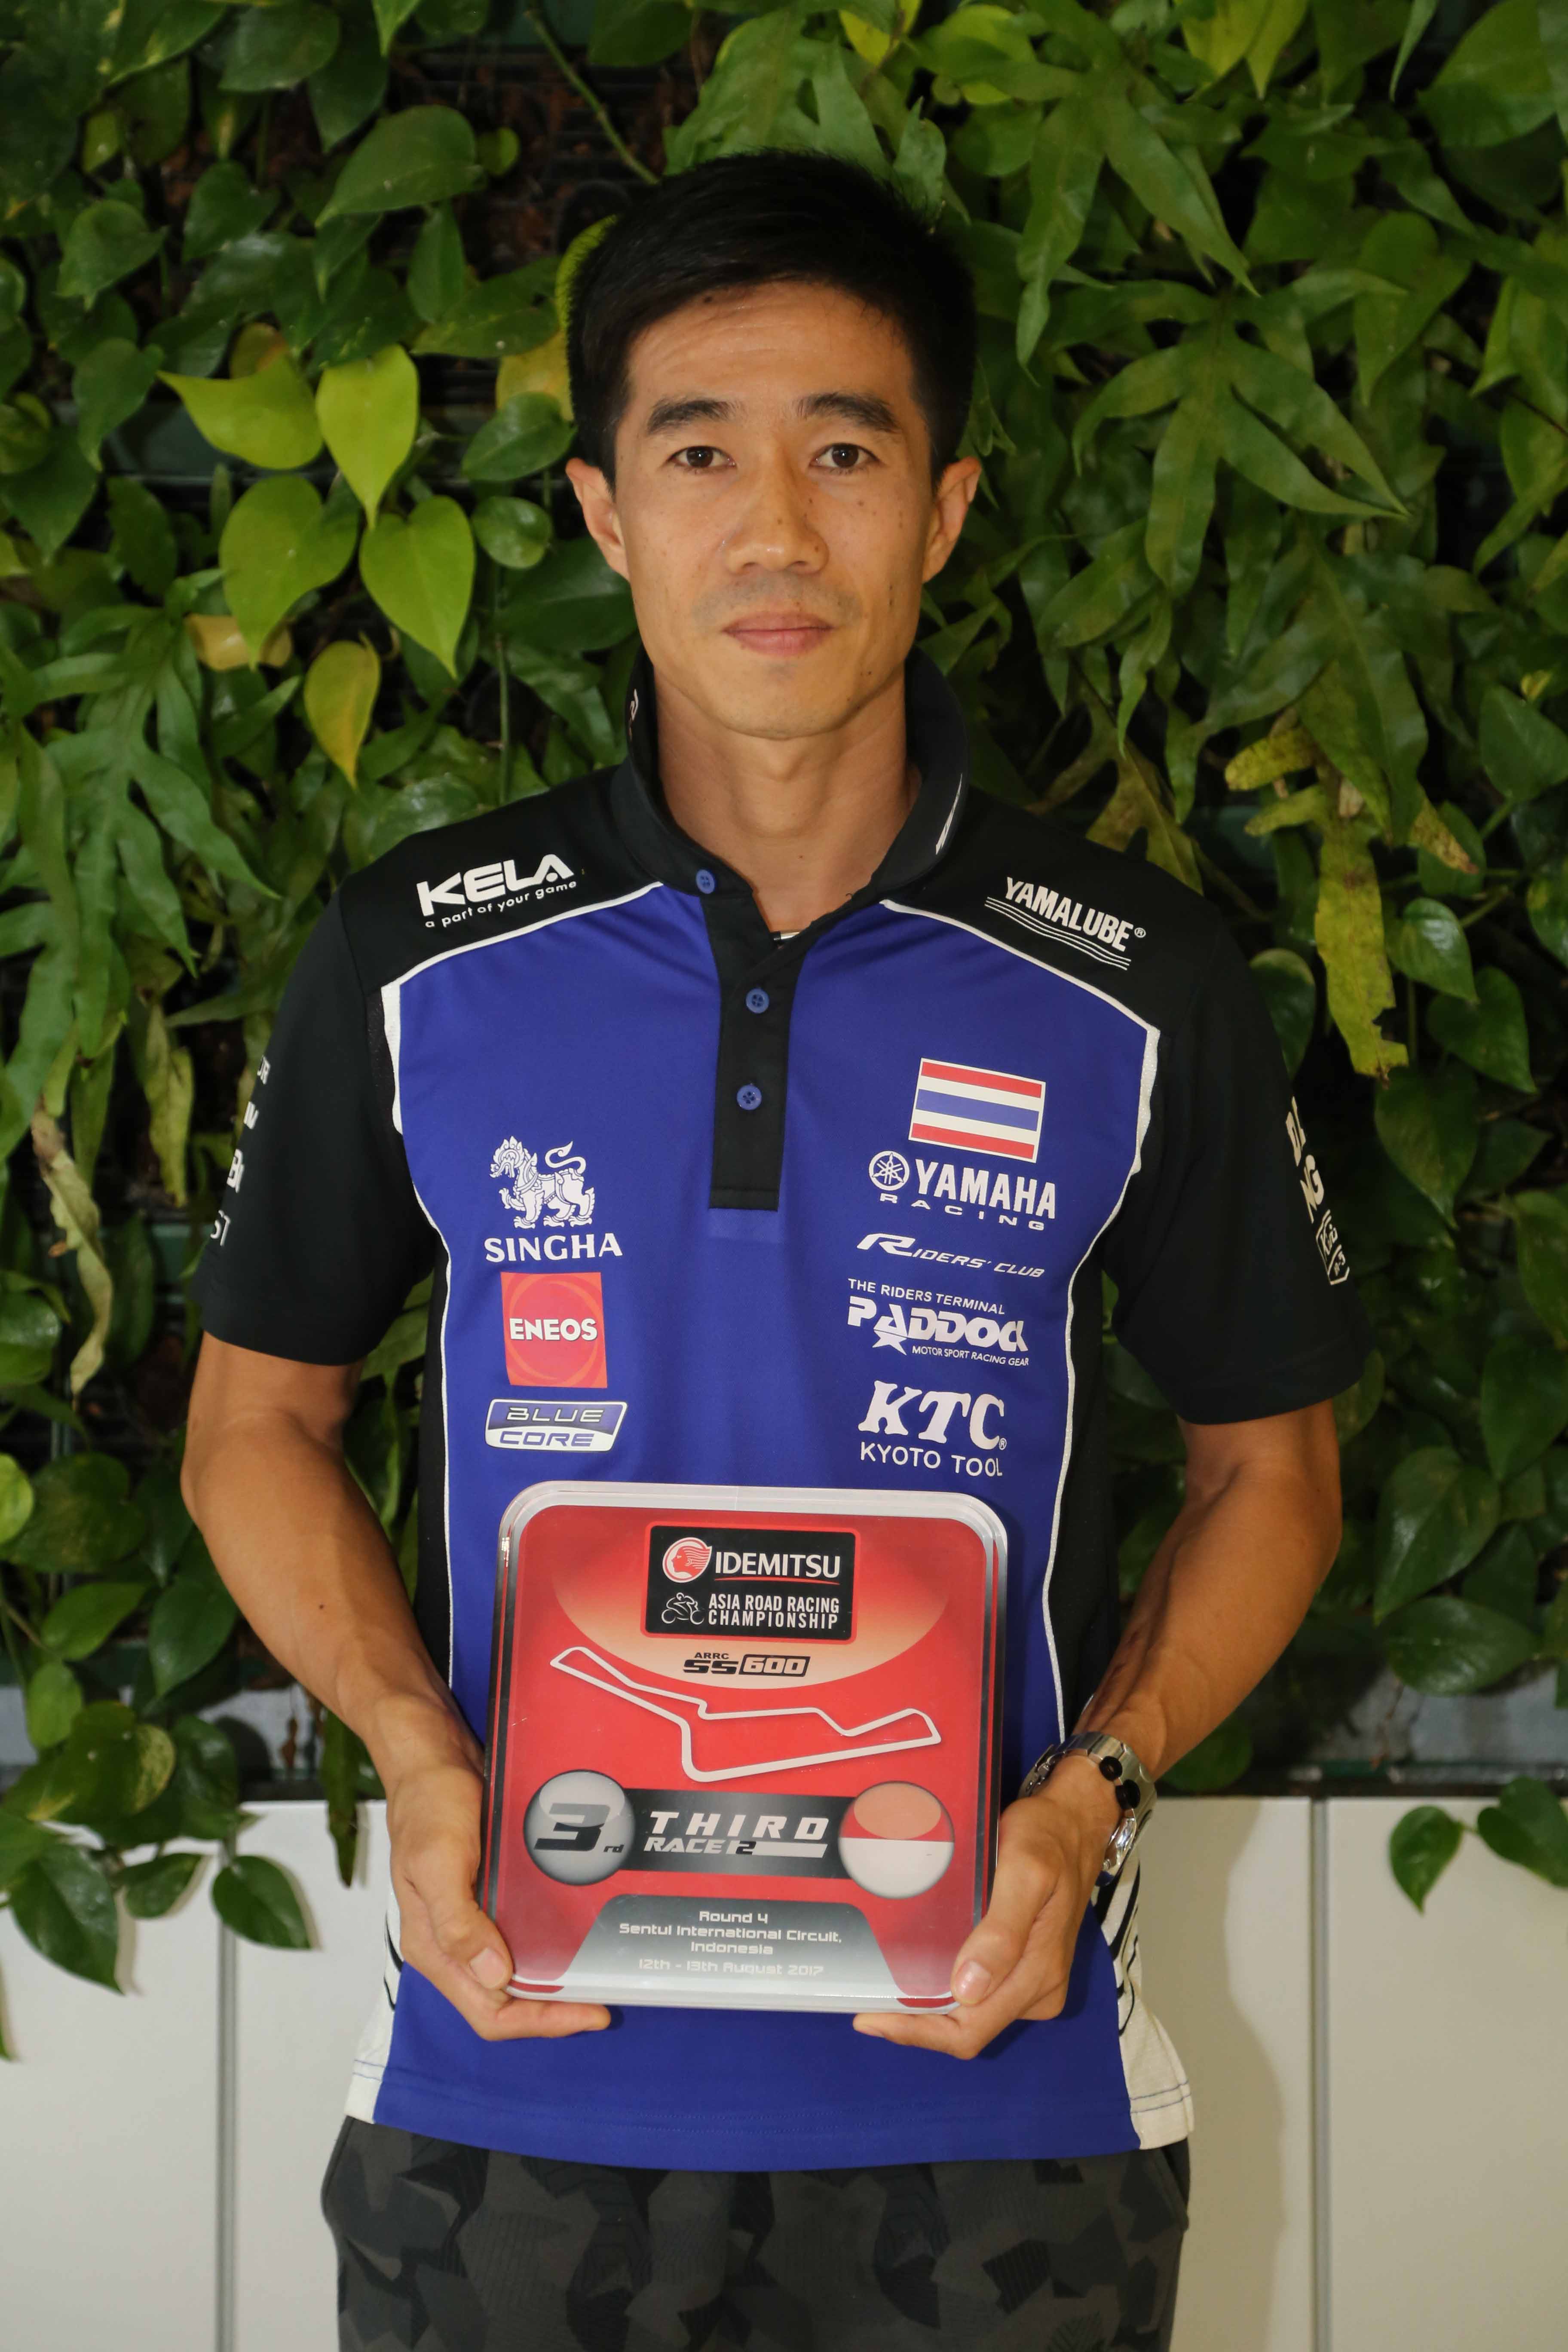 04 ยามาฮ่าต้อนรับฮีโร่นักบิดไทย หลังคว้าชัยแบบดับเบิ้ลโพเดี้ยม ศึกชิงแชมป์เอเชียที่อินโดนีเซีย